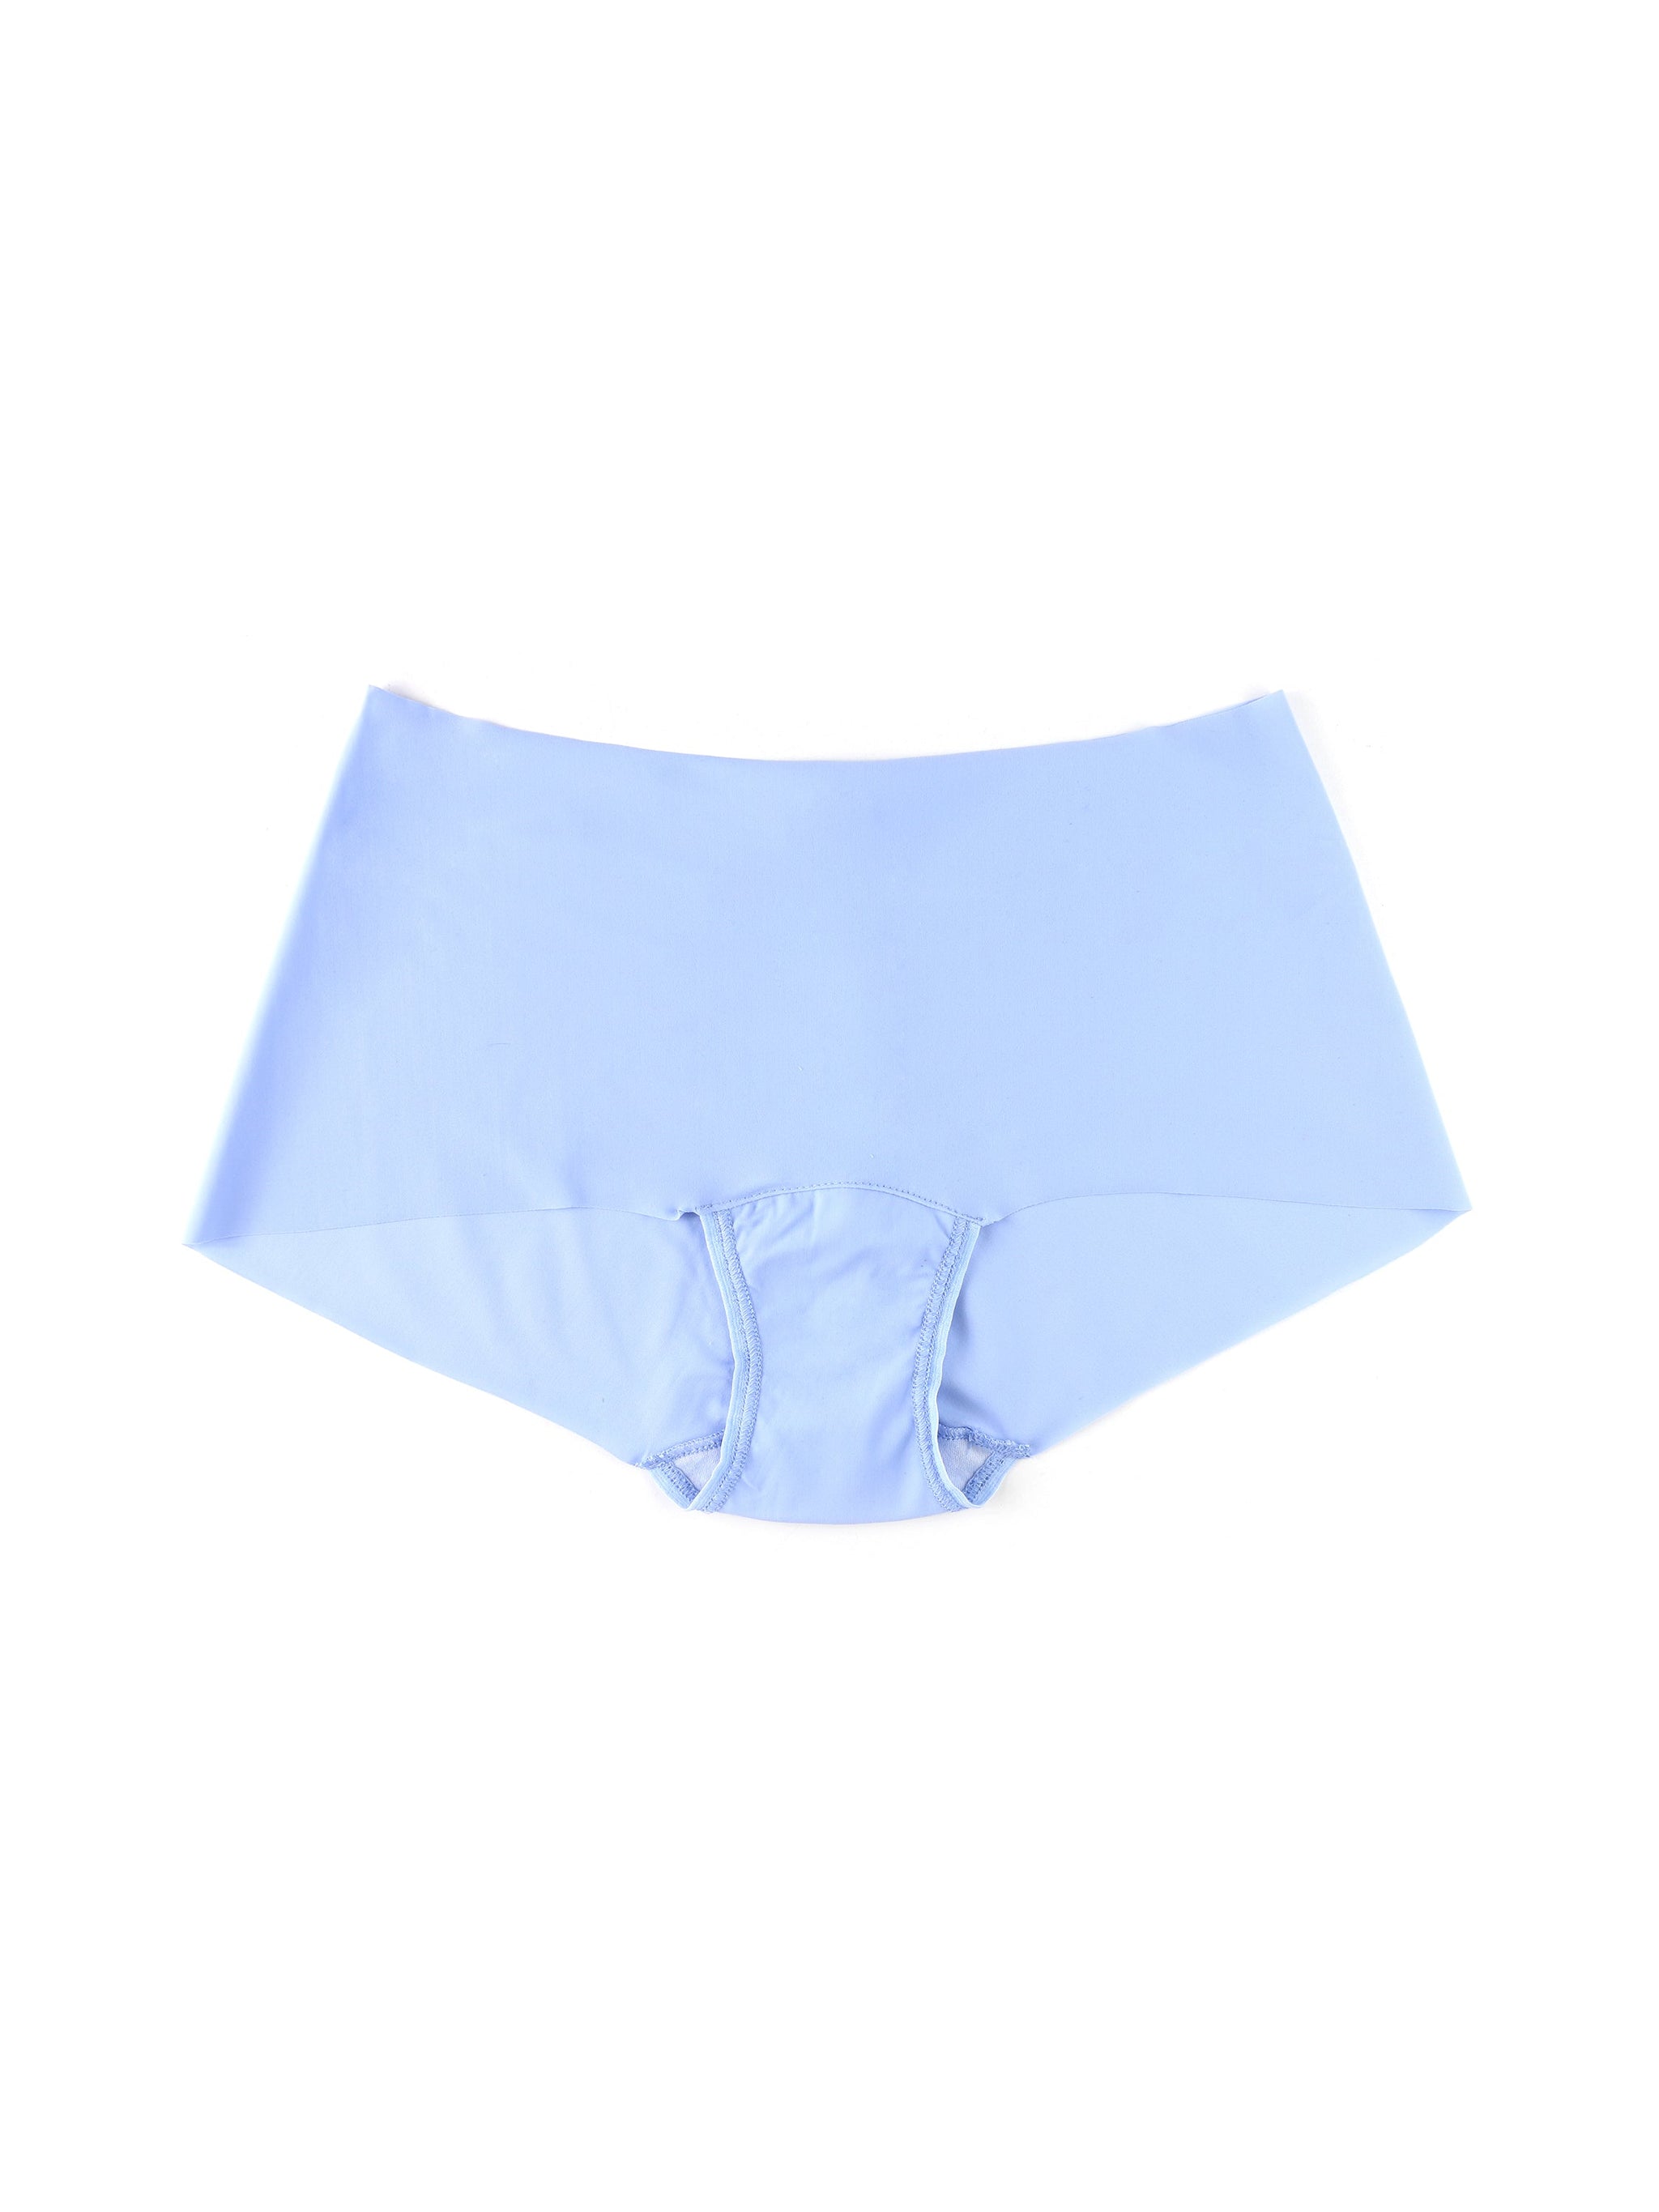 light blue cotton boy shorts panty